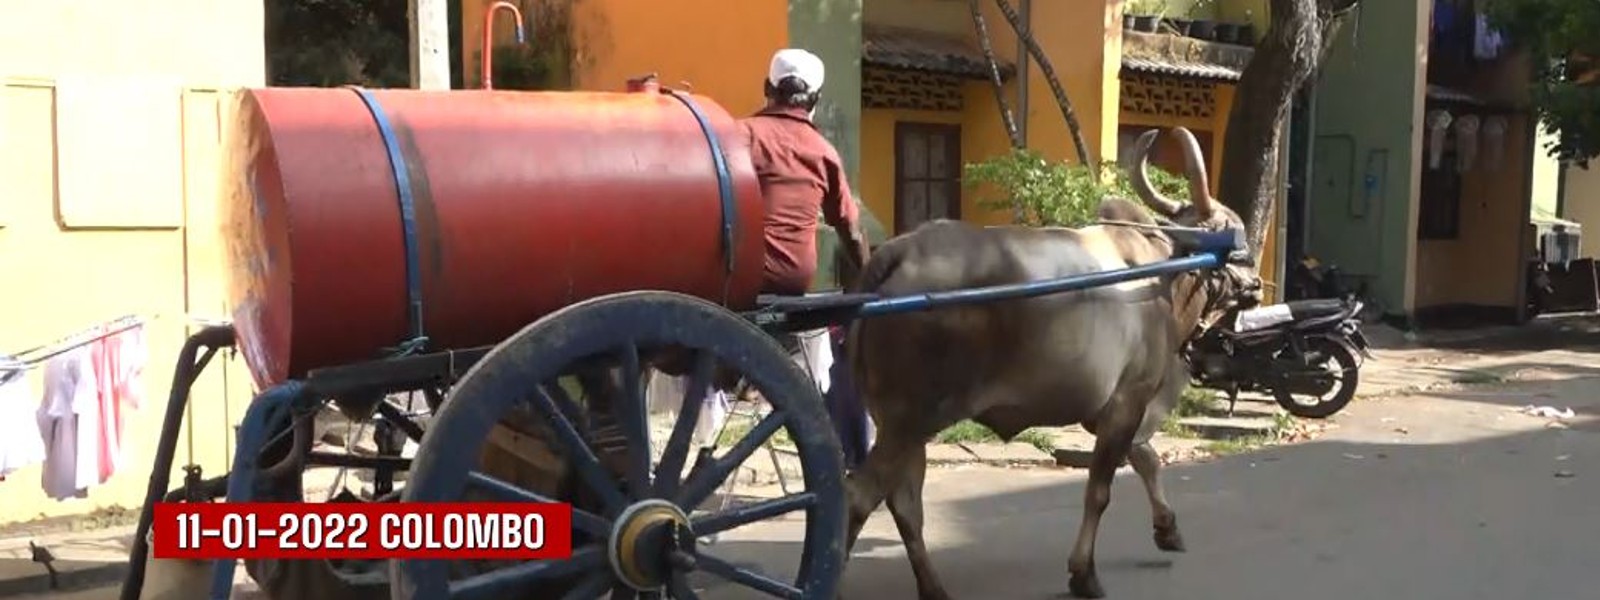 GAS Shortage : Kerosene carts make a glorious comeback to Colombo